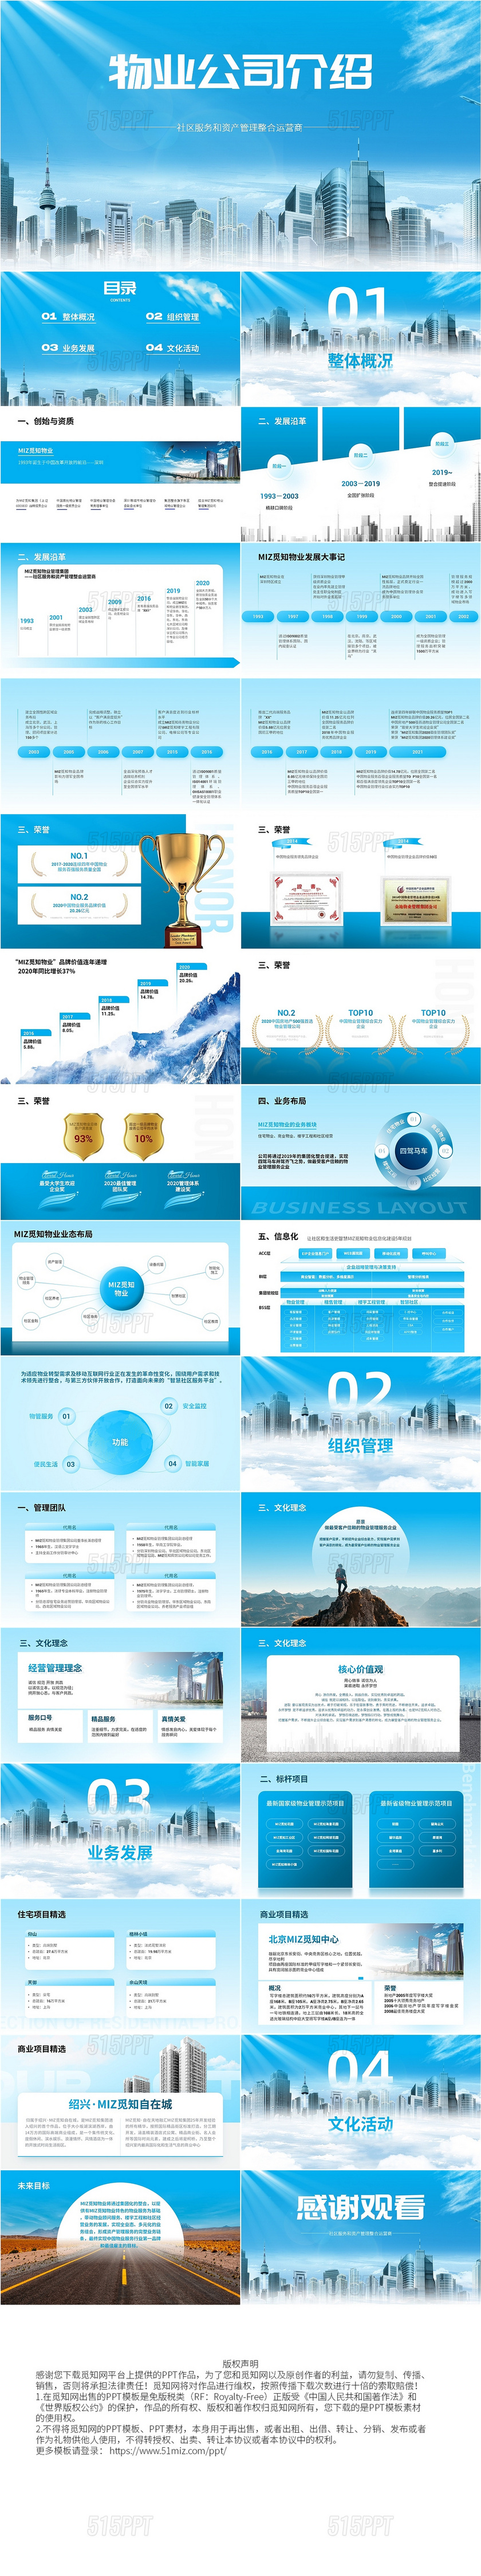 蓝色商务风简约物业公司介绍PPT模板主题